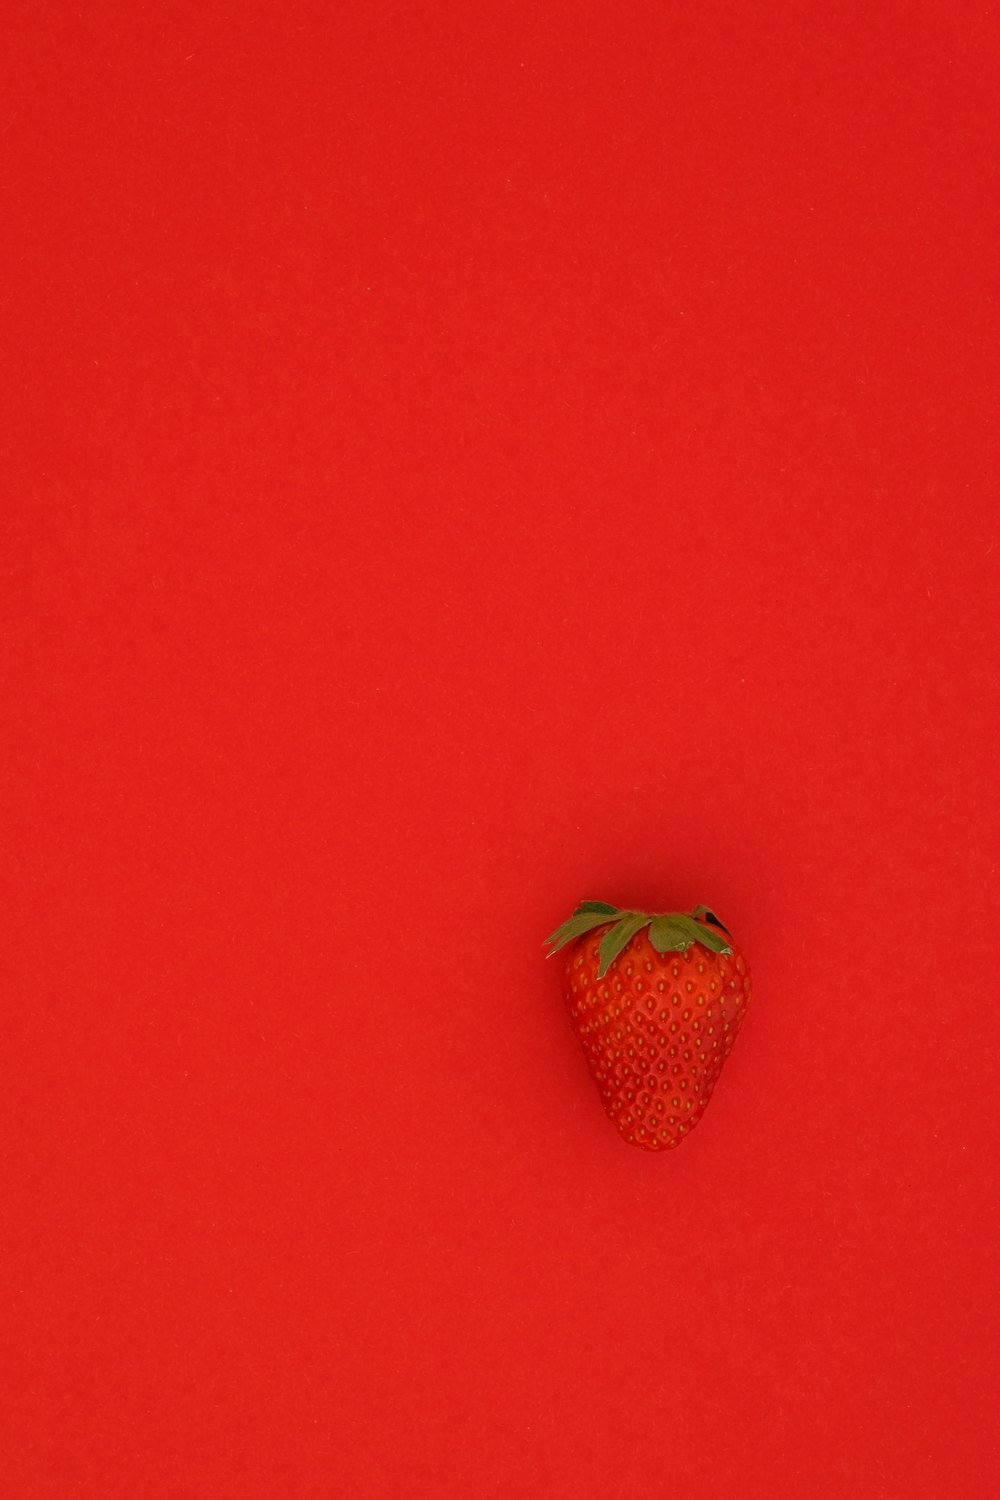 fraise rouge sur surface rouge